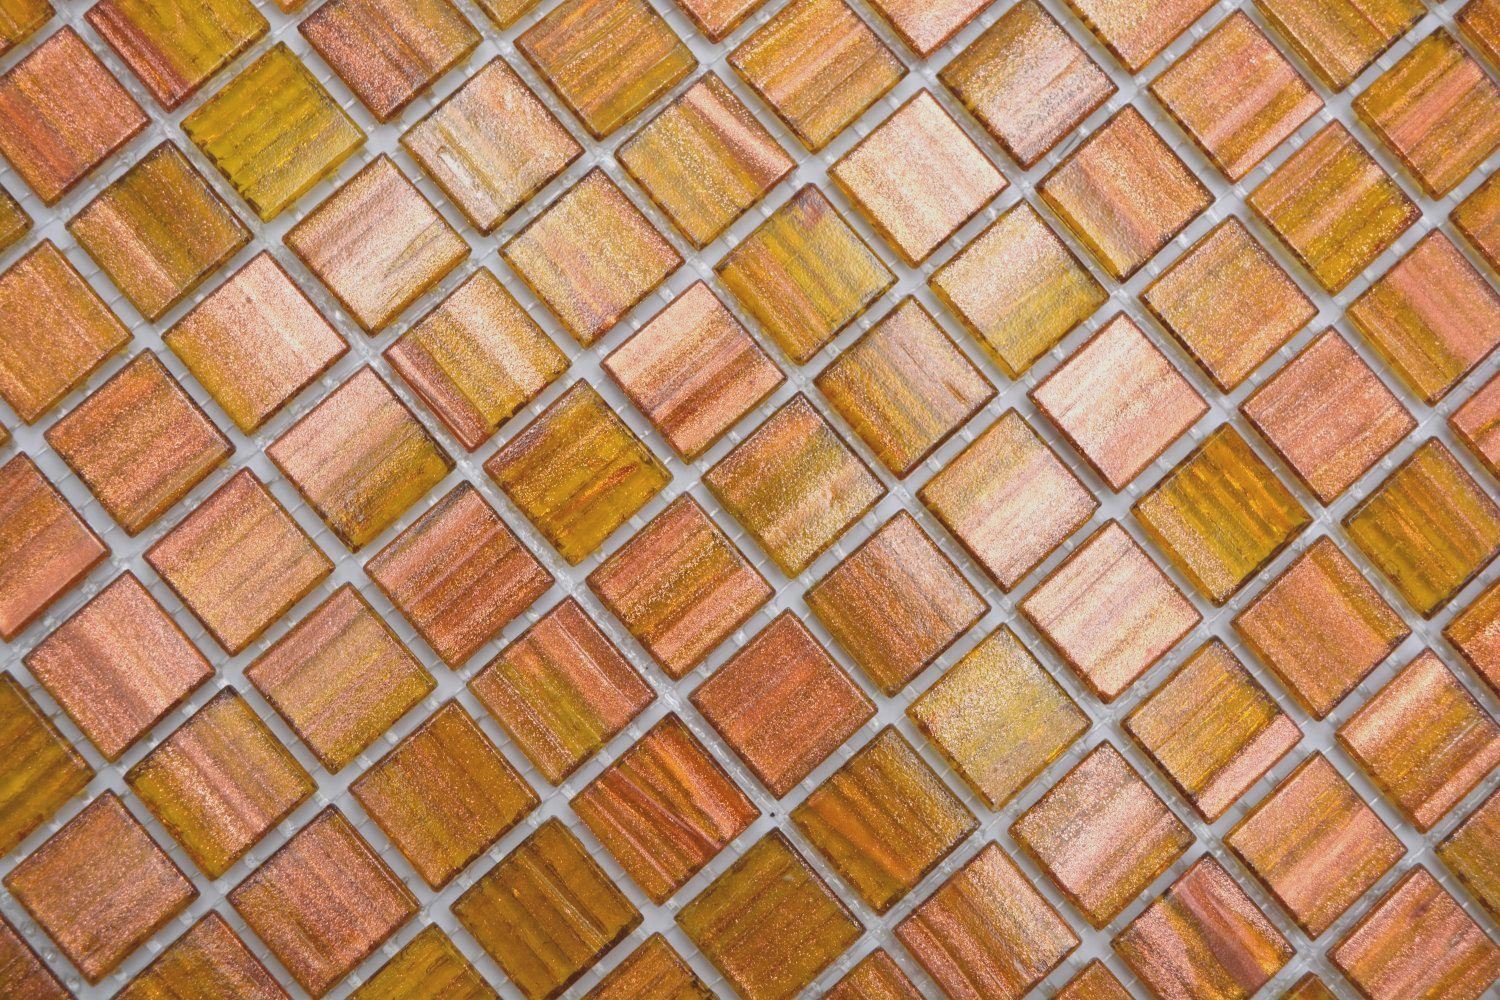 Mosani Mosaikfliesen Quadratisches Glasmosaik Mosaikfliesen glänzend hellbraun